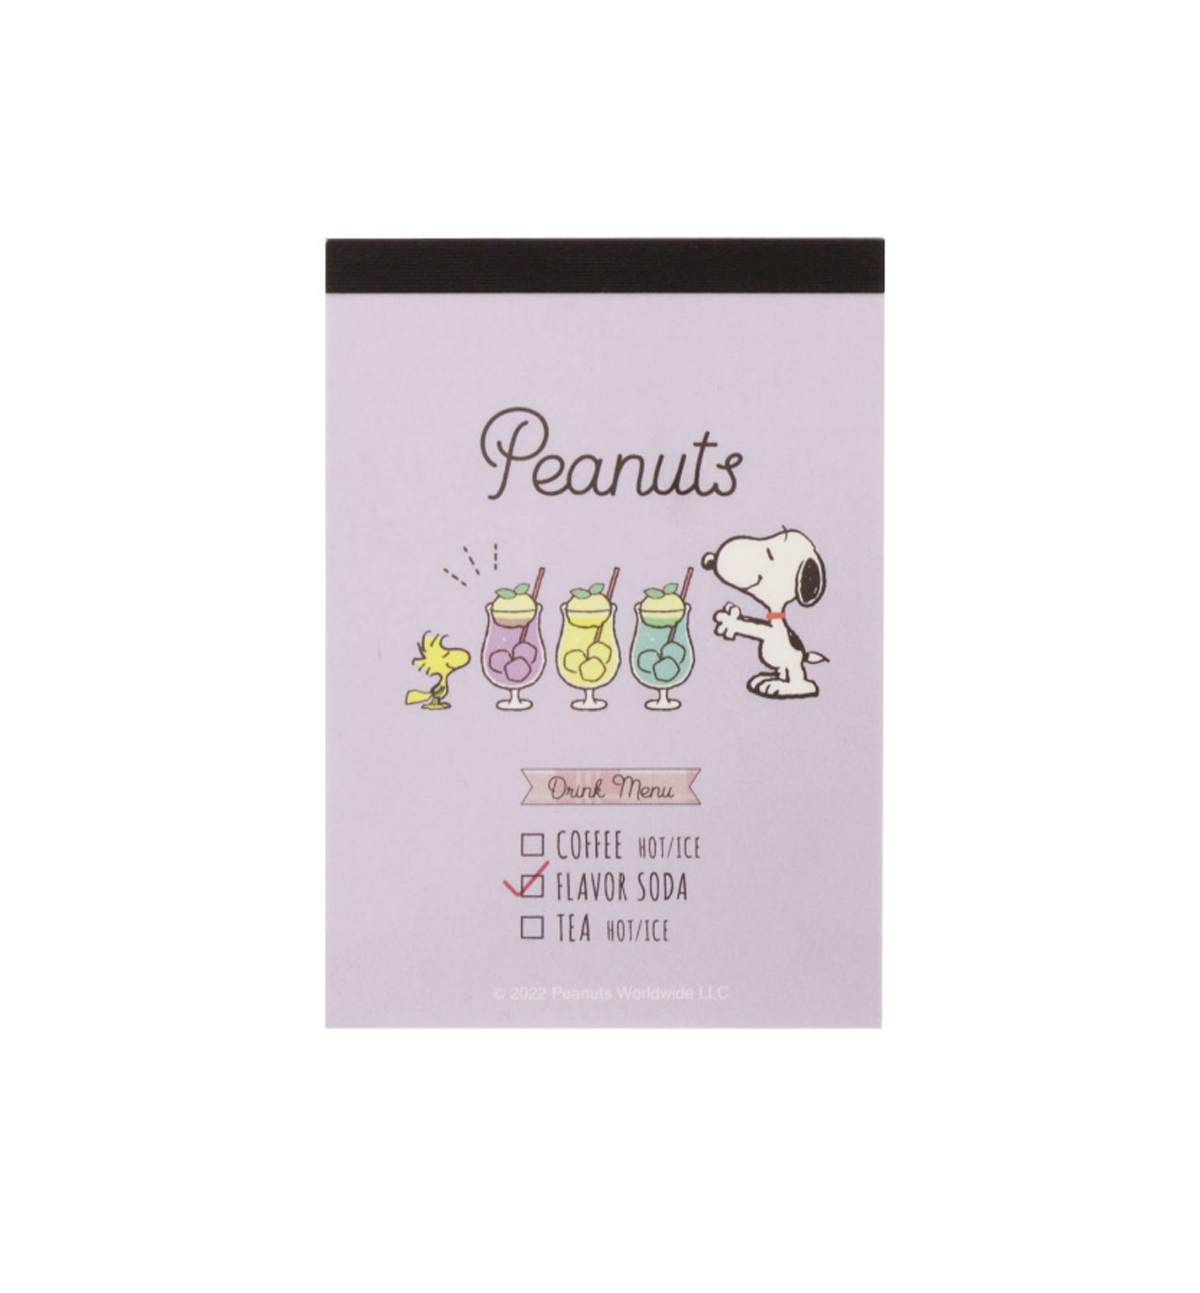 Peanuts Snoopy Mini Memopad [Drink Menu]